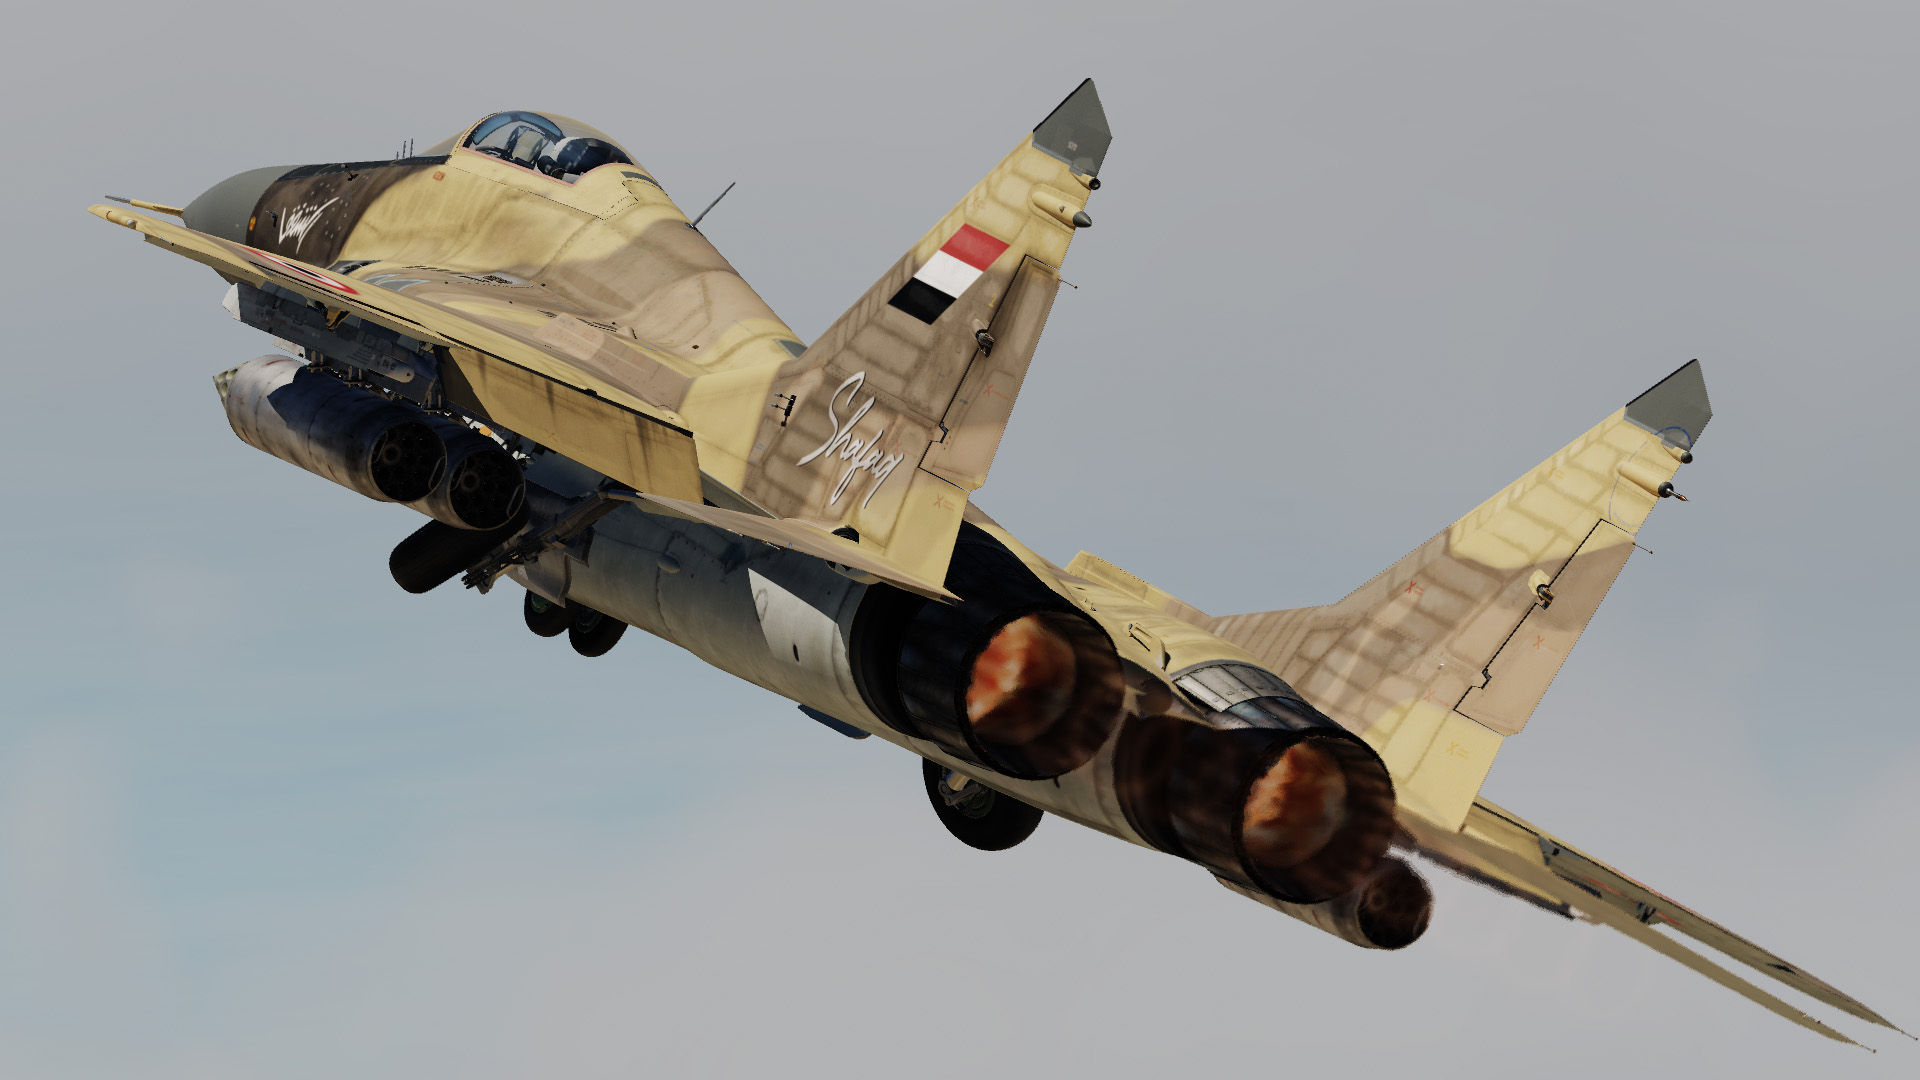 Yemeni MiG-29 #22-06 "Shafaq"